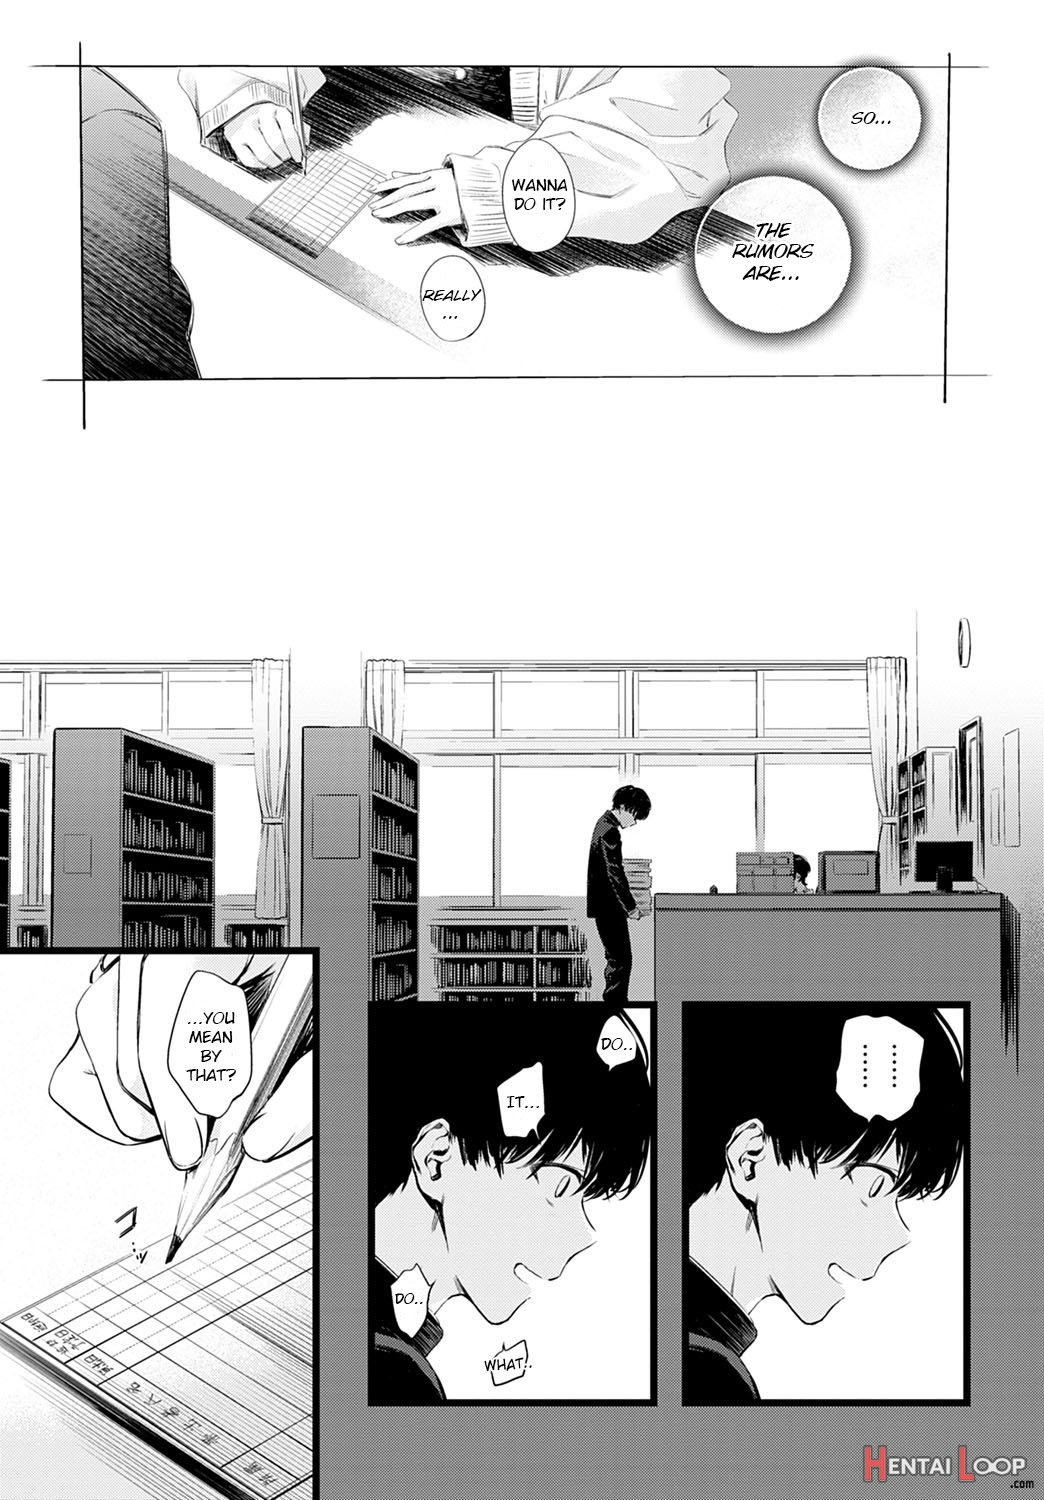 Toshoiin-san No Ura Menu page 3